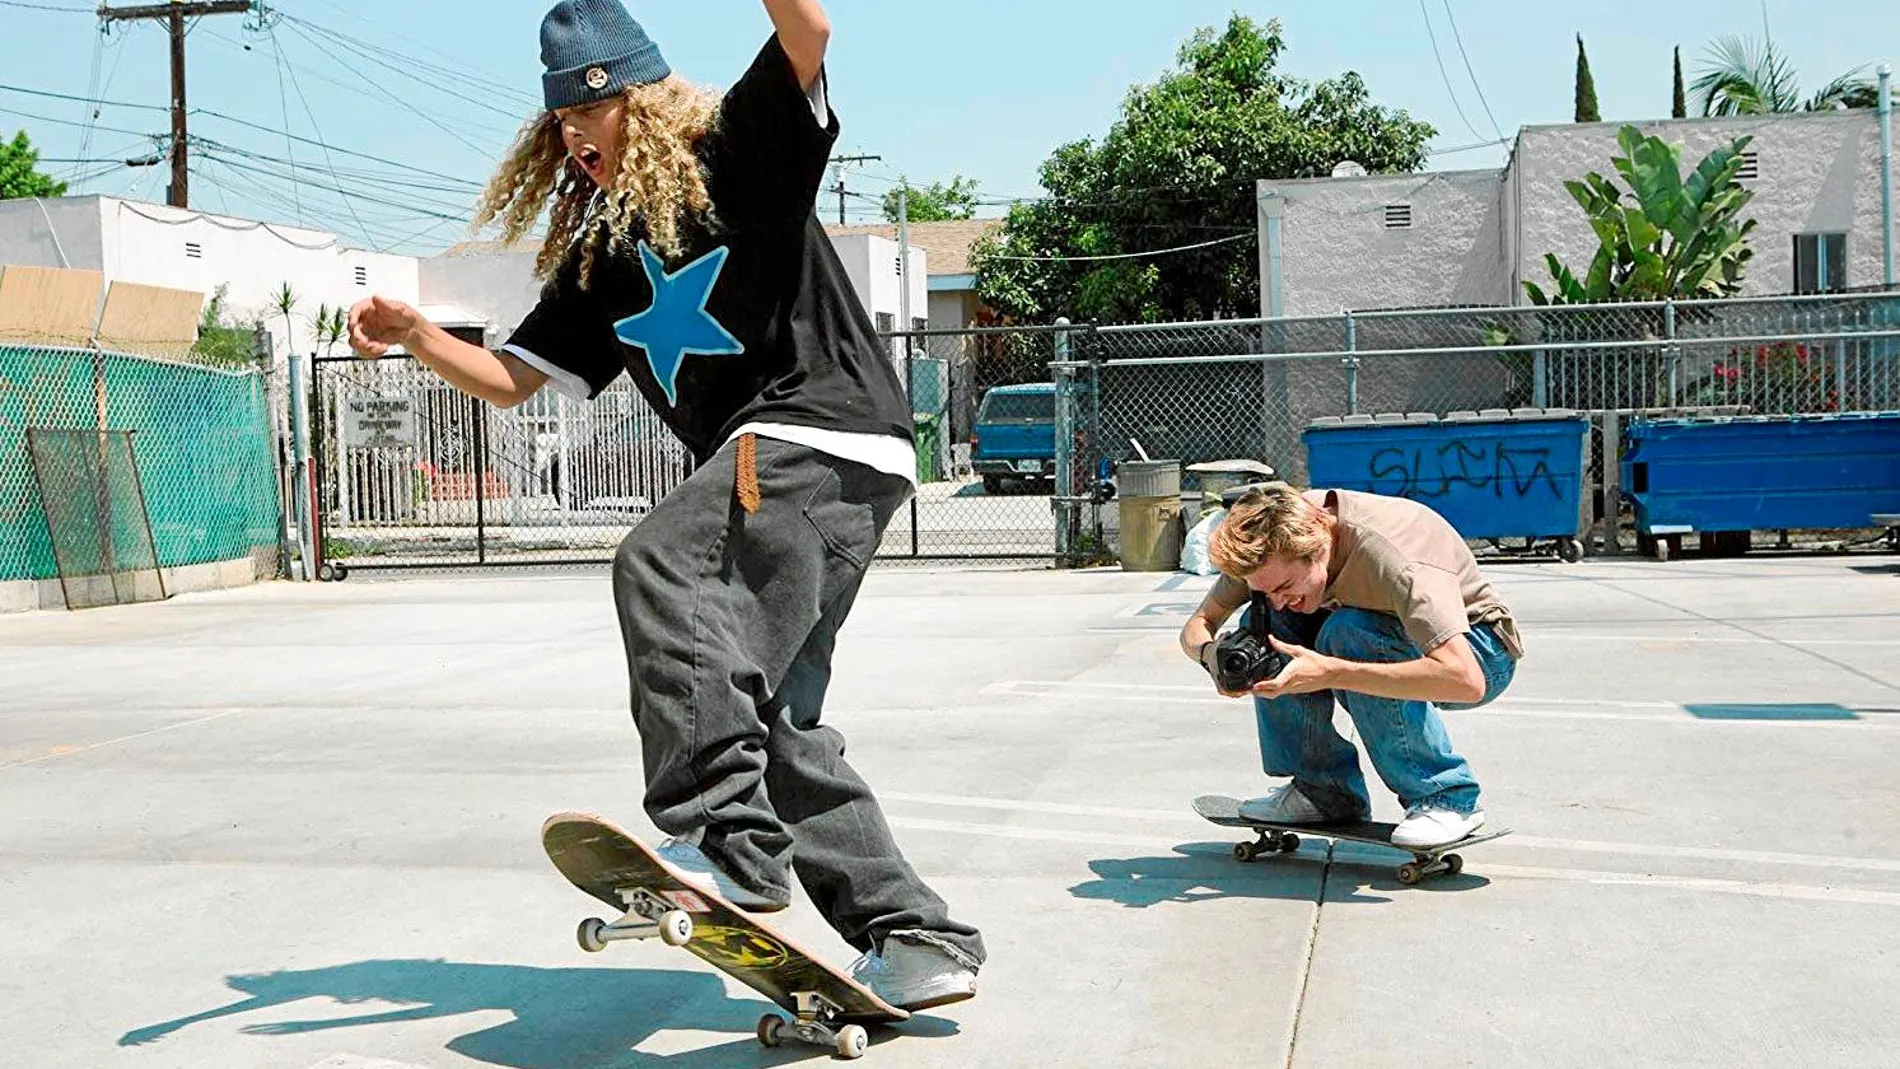 "En los 90": Vuelven los 90 y esta película de "skaters"lo demuestra